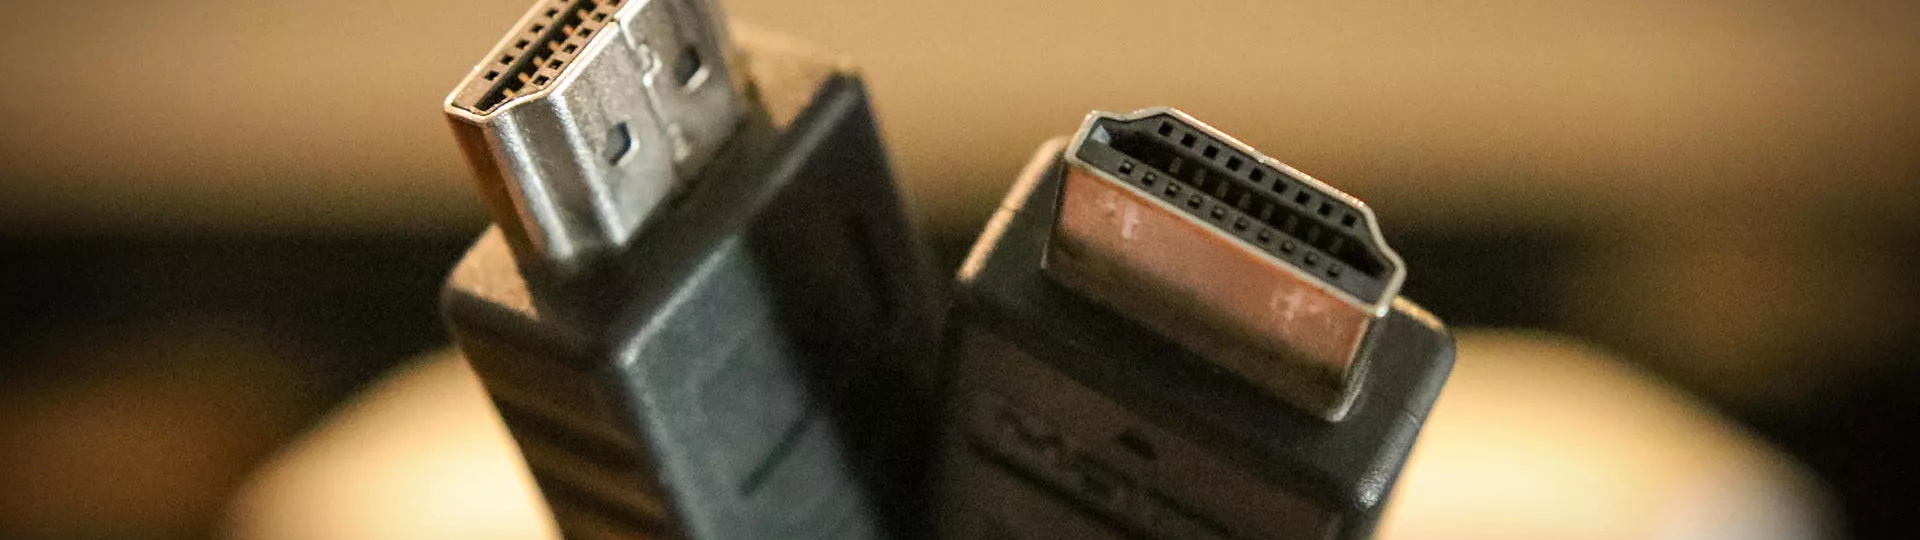 PS5 má v balení kabel který zvládne až 120 fps | Novinky